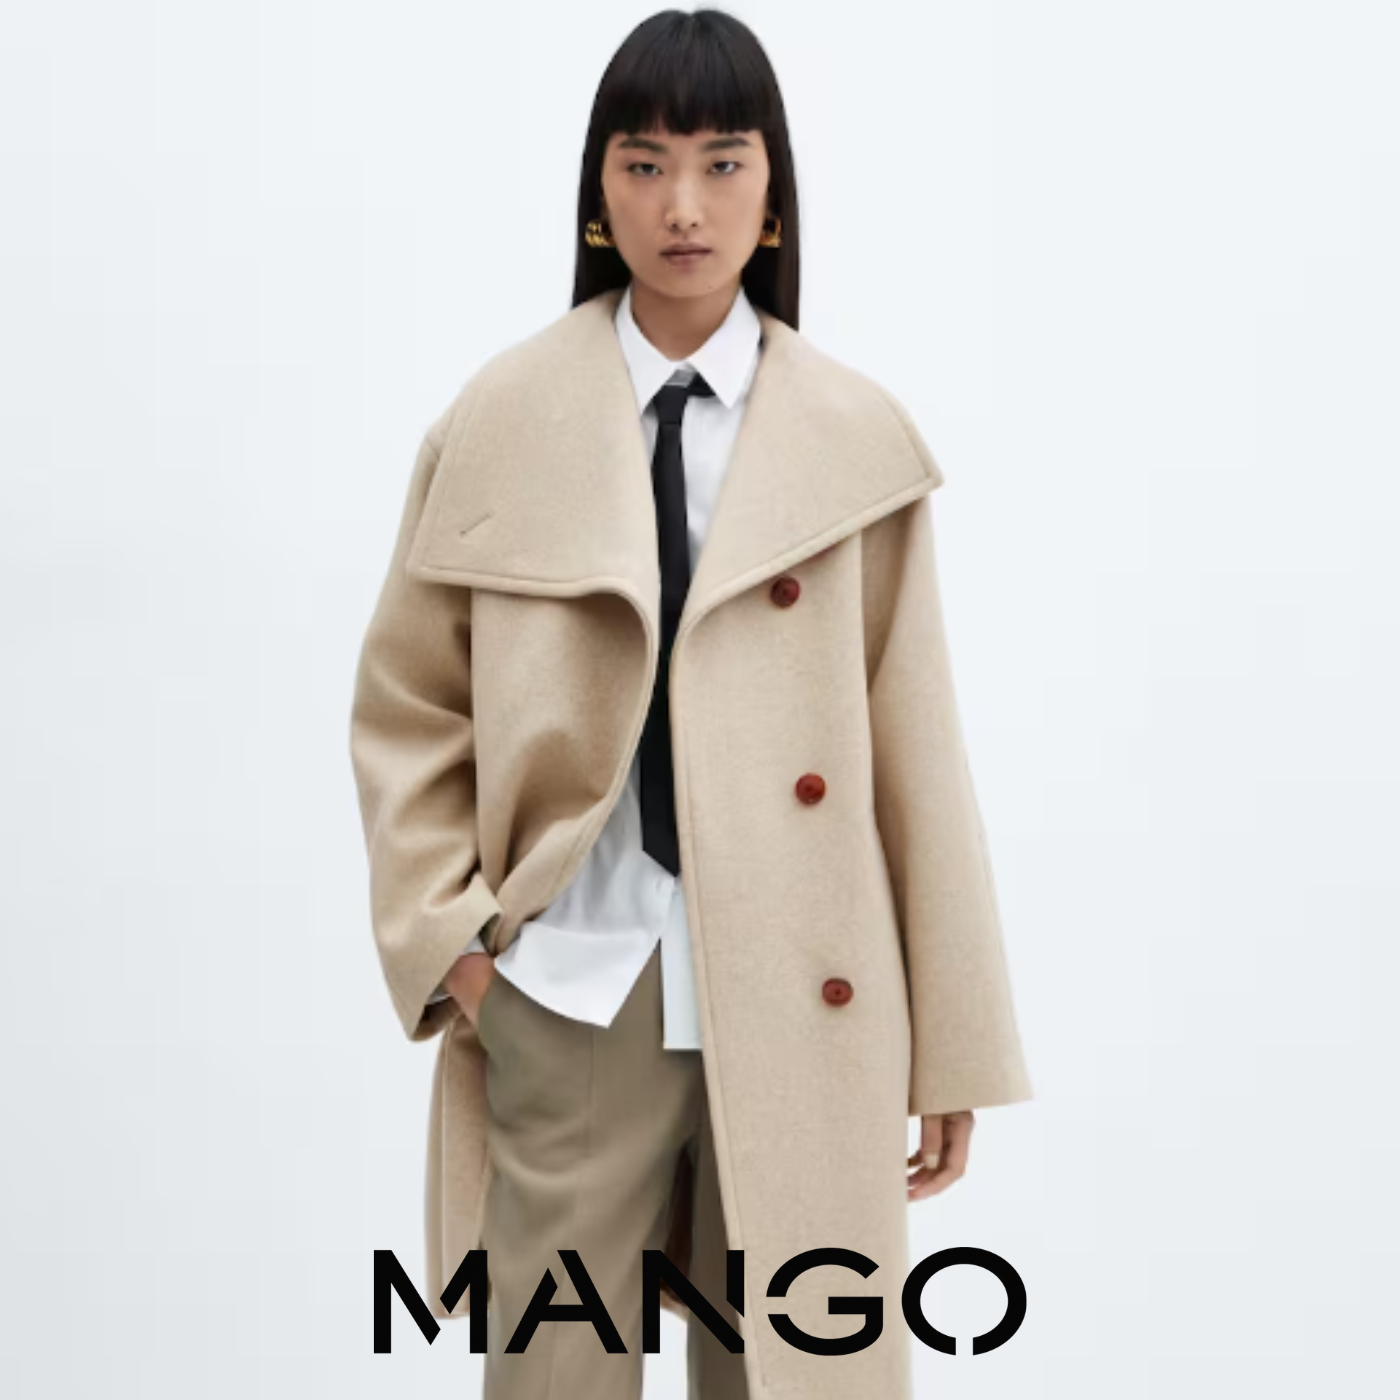 Mango offre manteaux